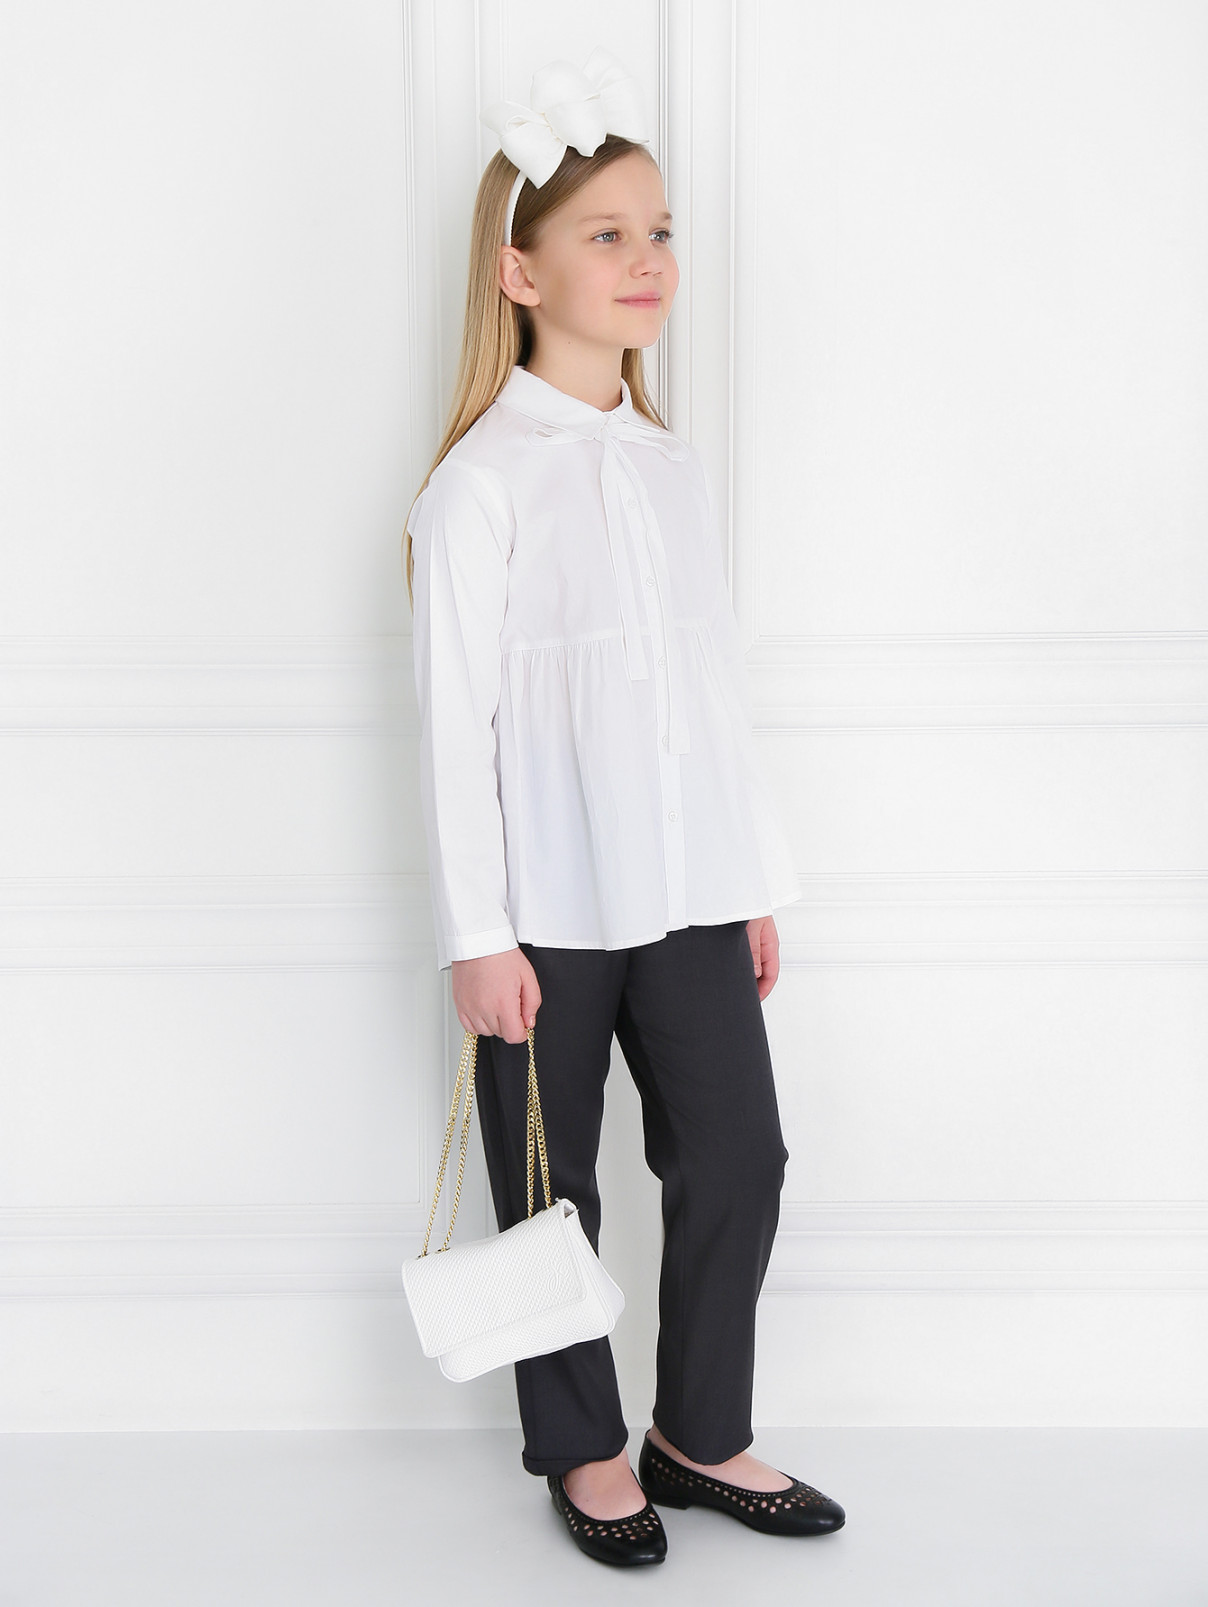 Брюки свободного кроя с поясом Aletta Couture  –  Модель Общий вид  – Цвет:  Серый